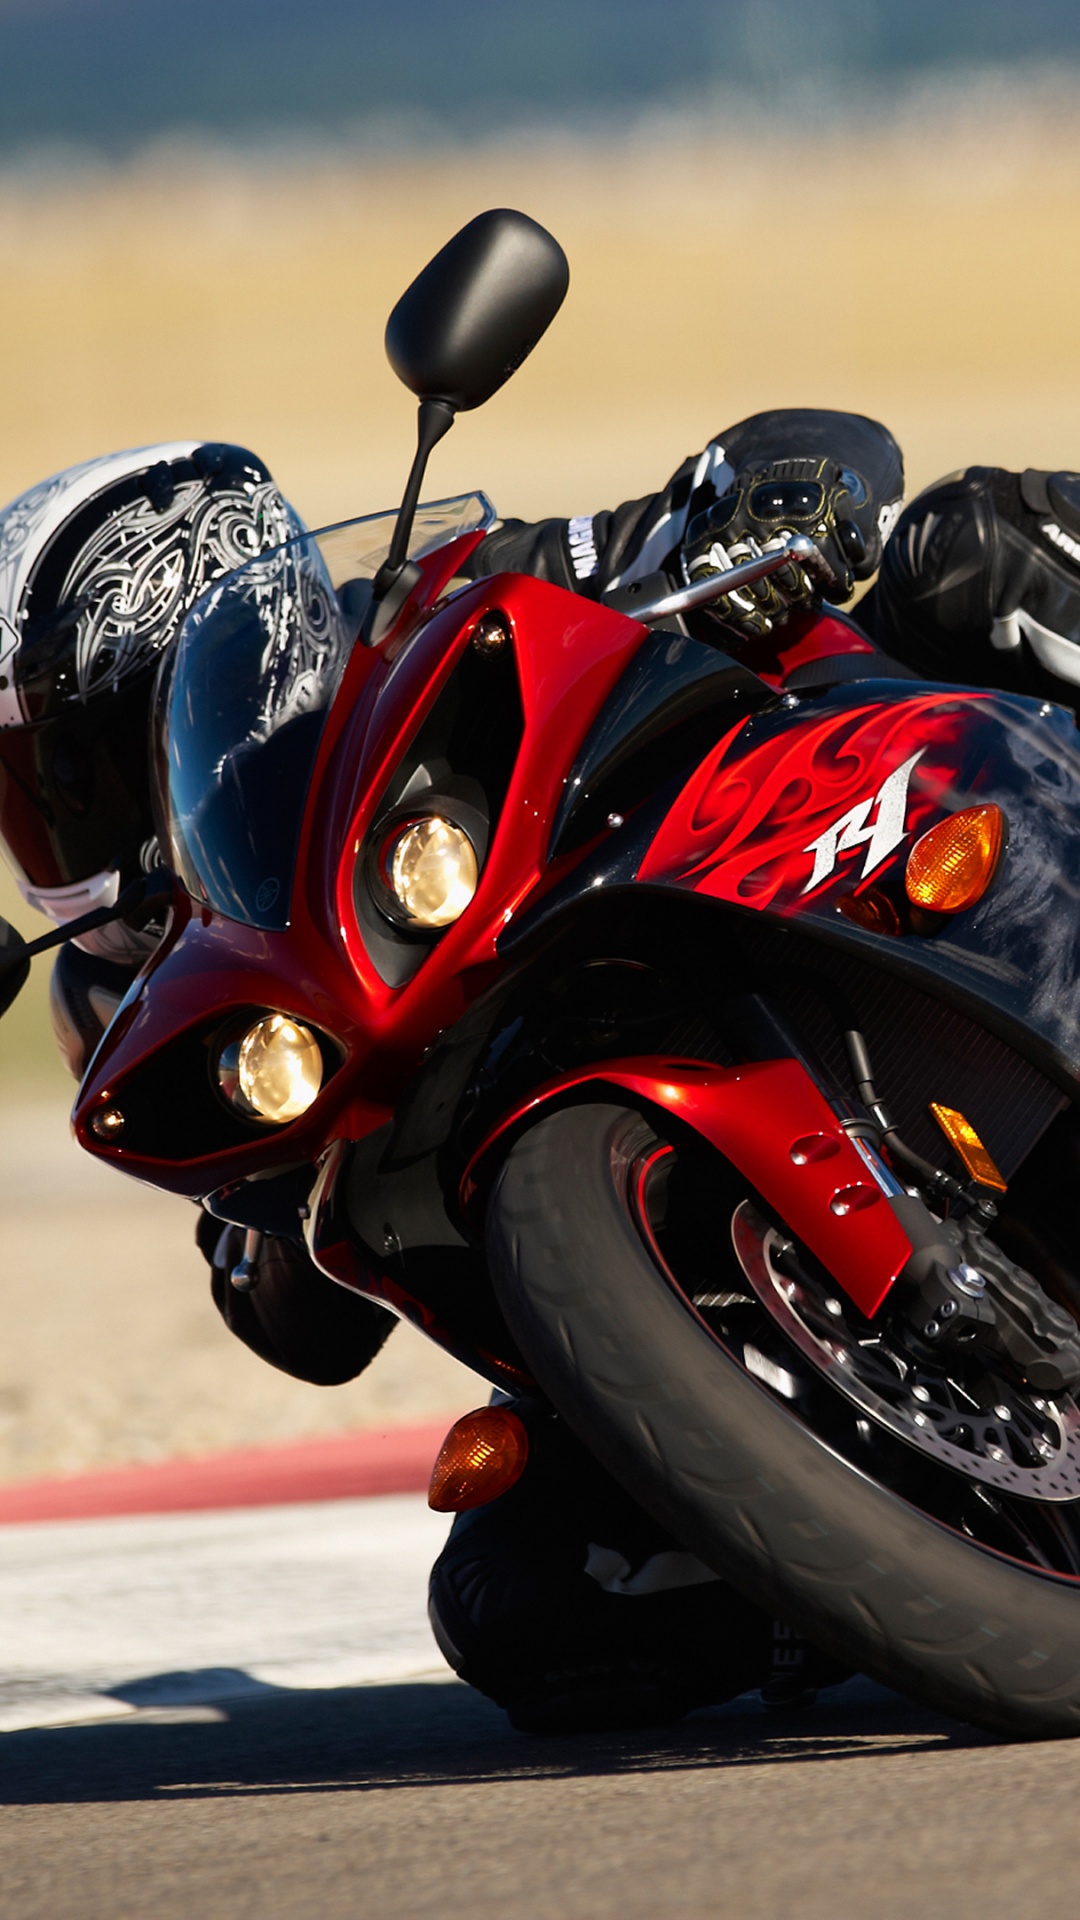 摩托车头盔, 超级赛车, 摩托车手, 赛道, 摩托车赛车 壁纸 1080x1920 允许